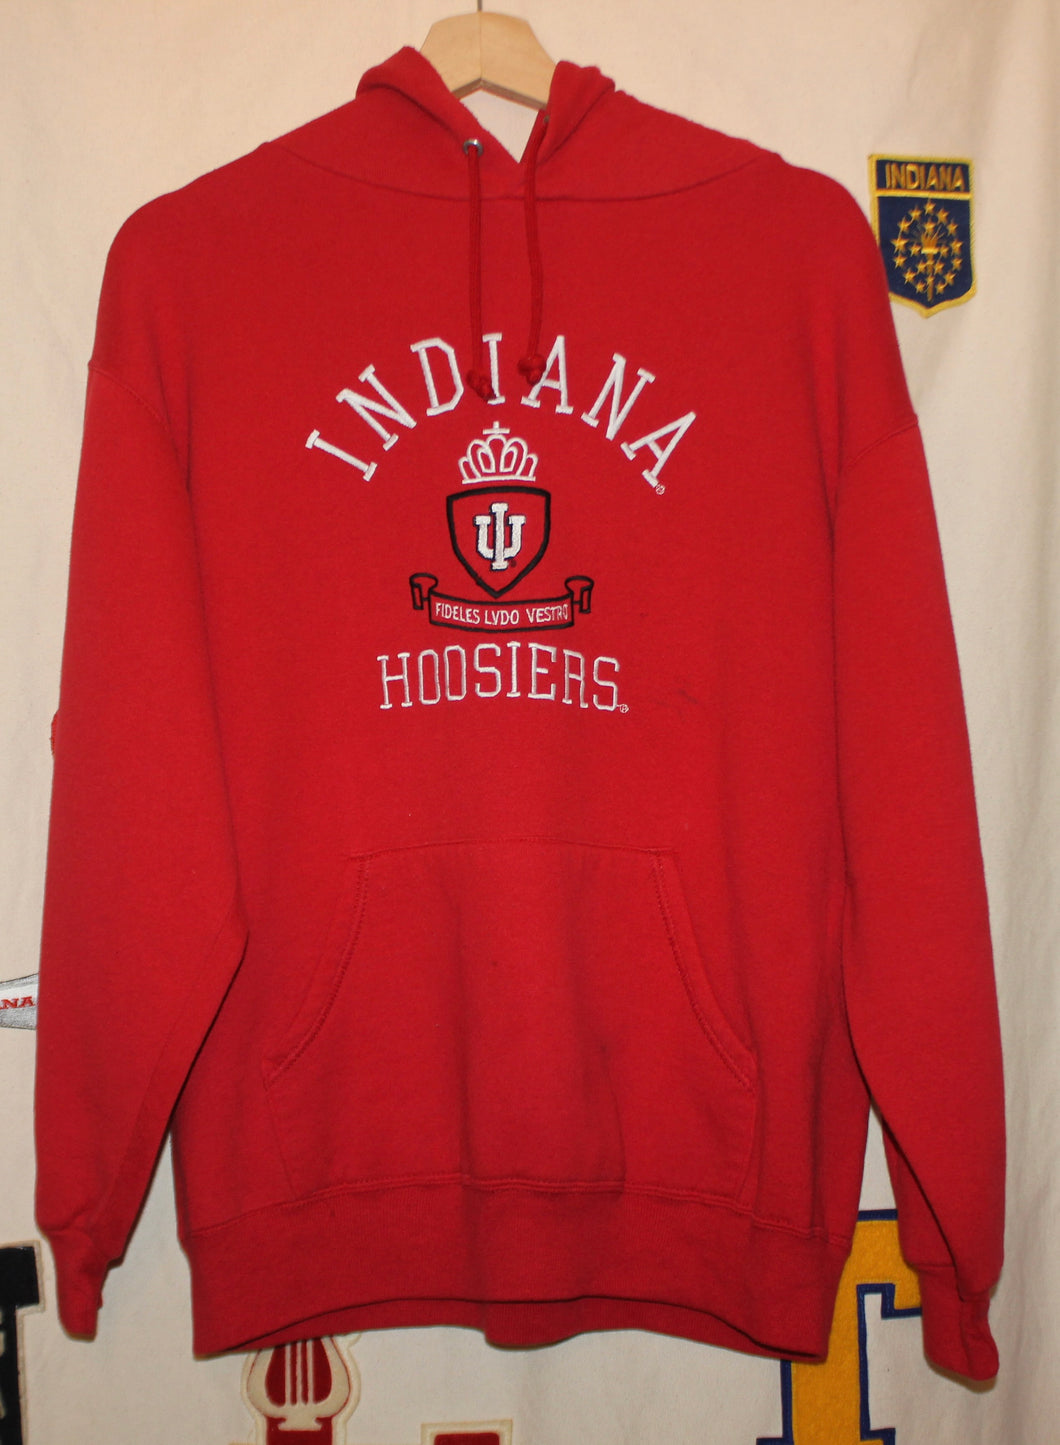 Indiana University Hoosier Hoodie: L